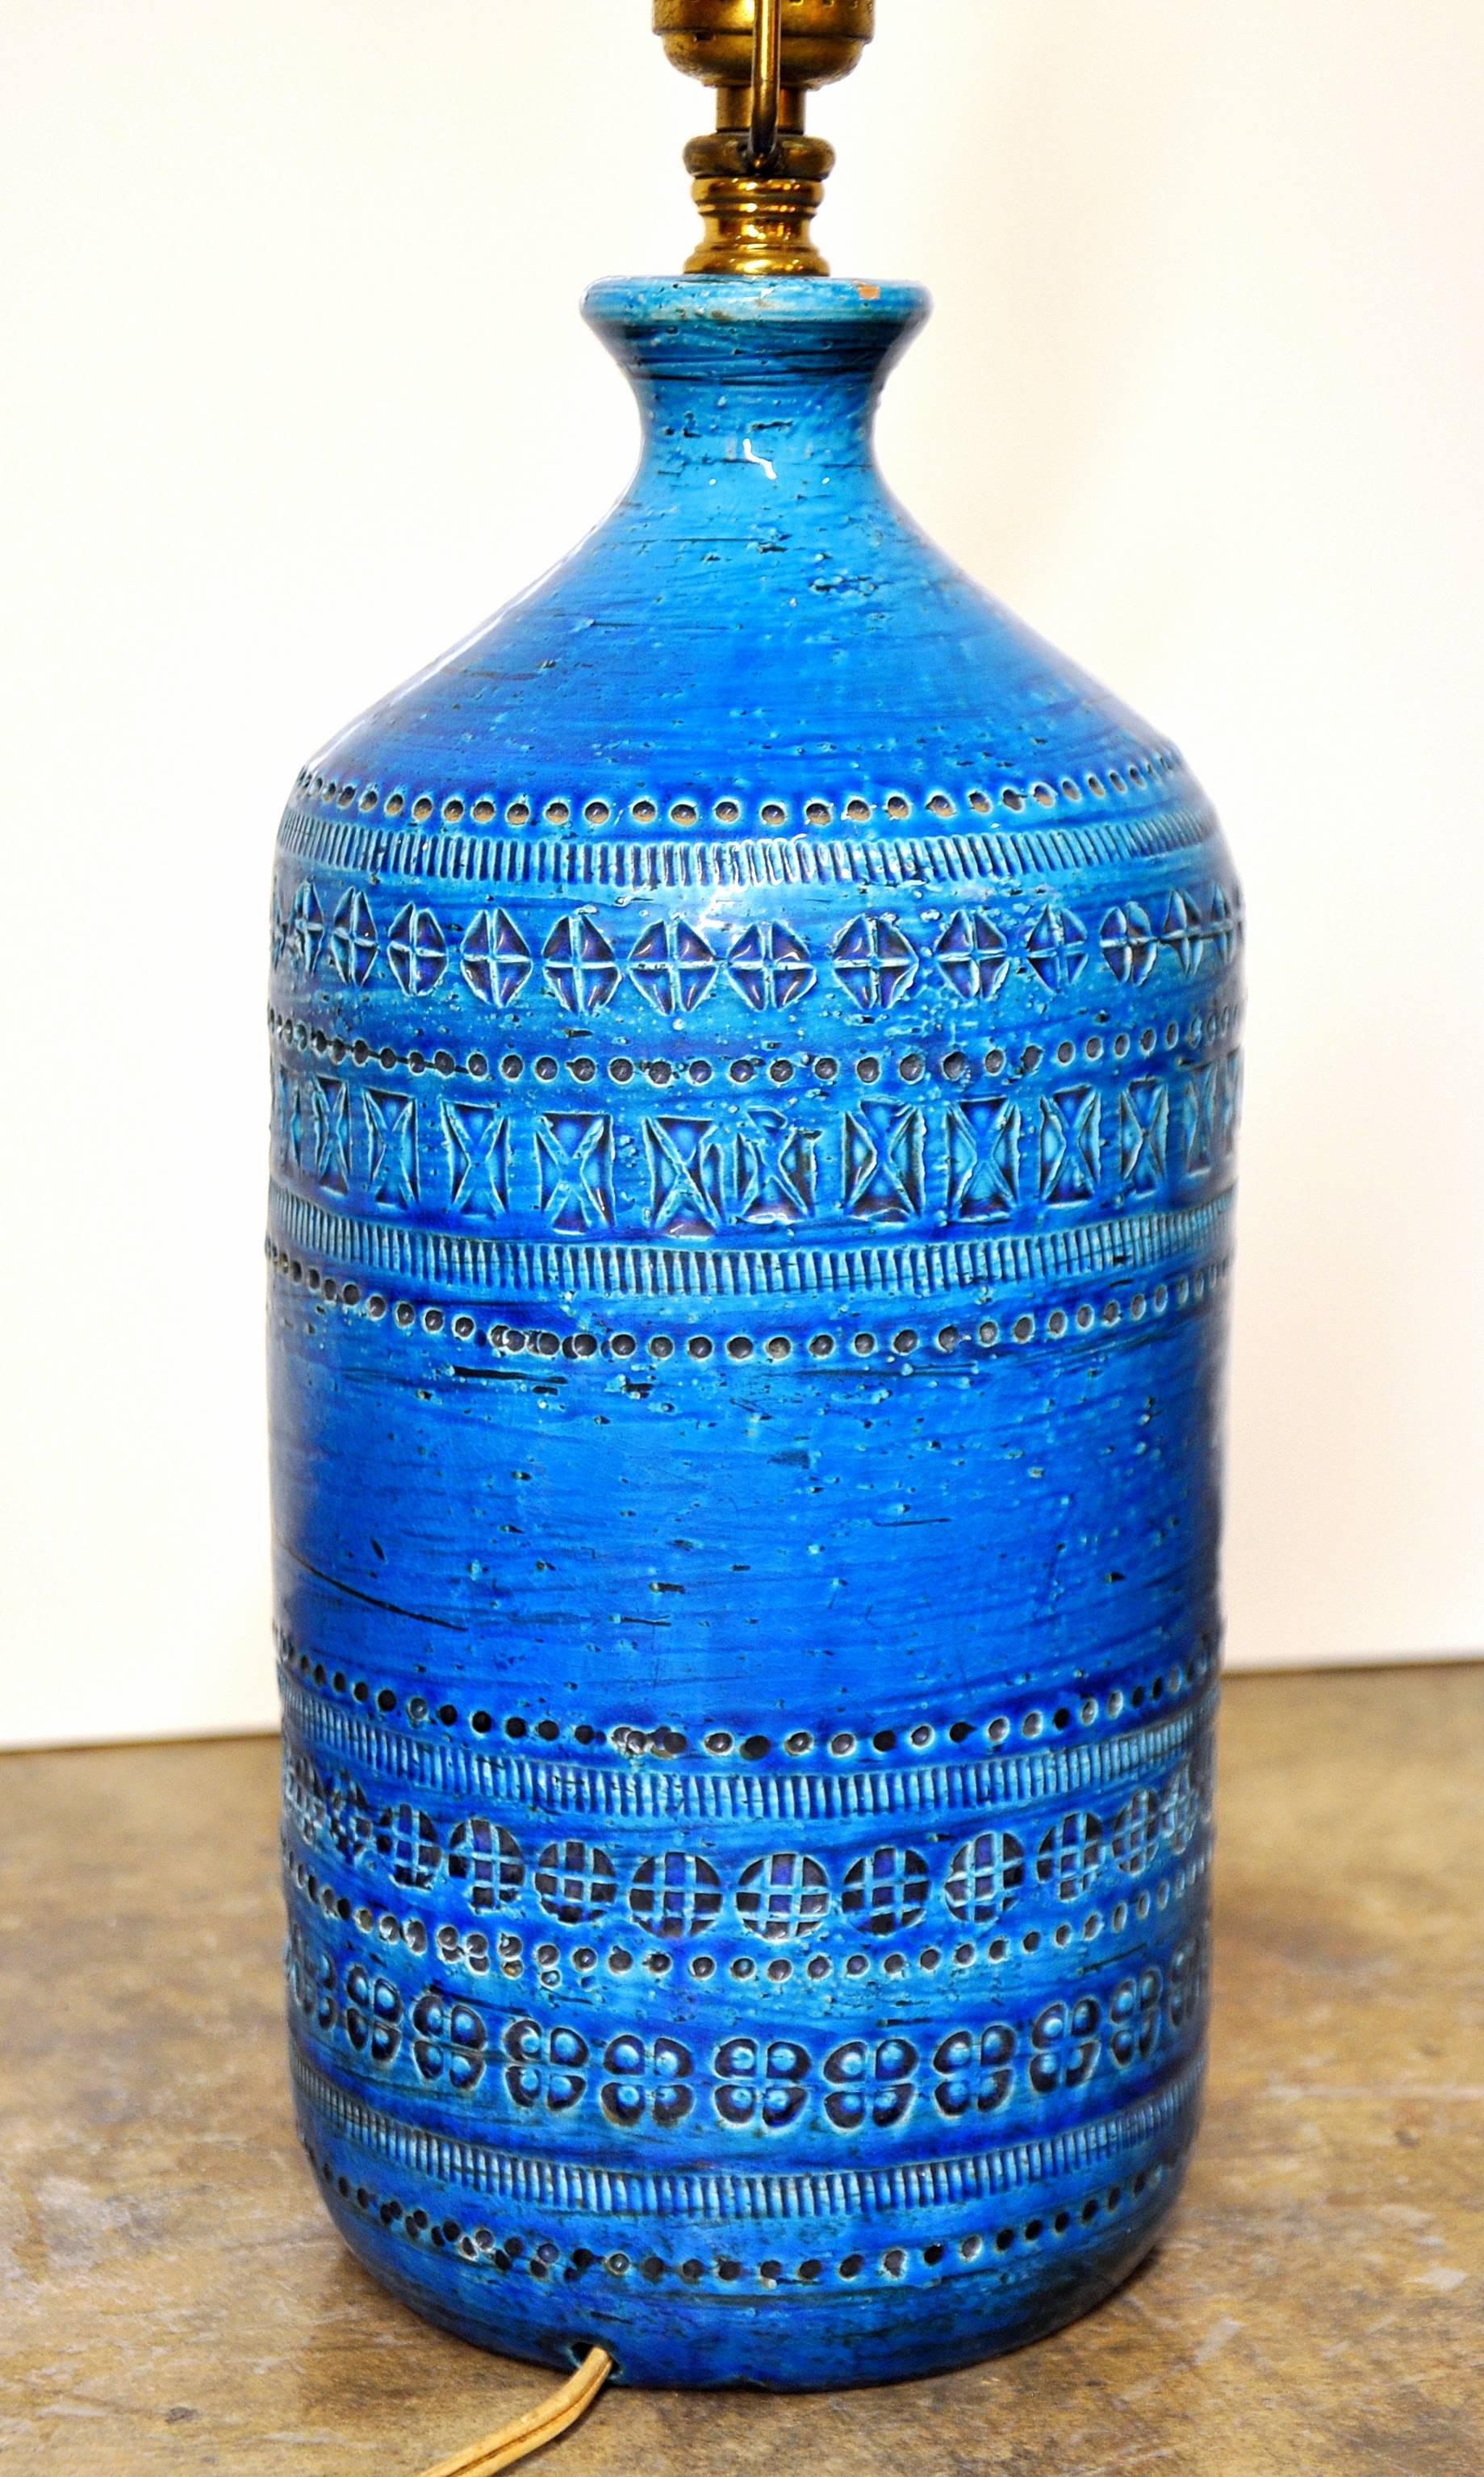 Glazed Aldo Londi for Bitossi Rimini Blu Italian Ceramic Lamp, circa 1960